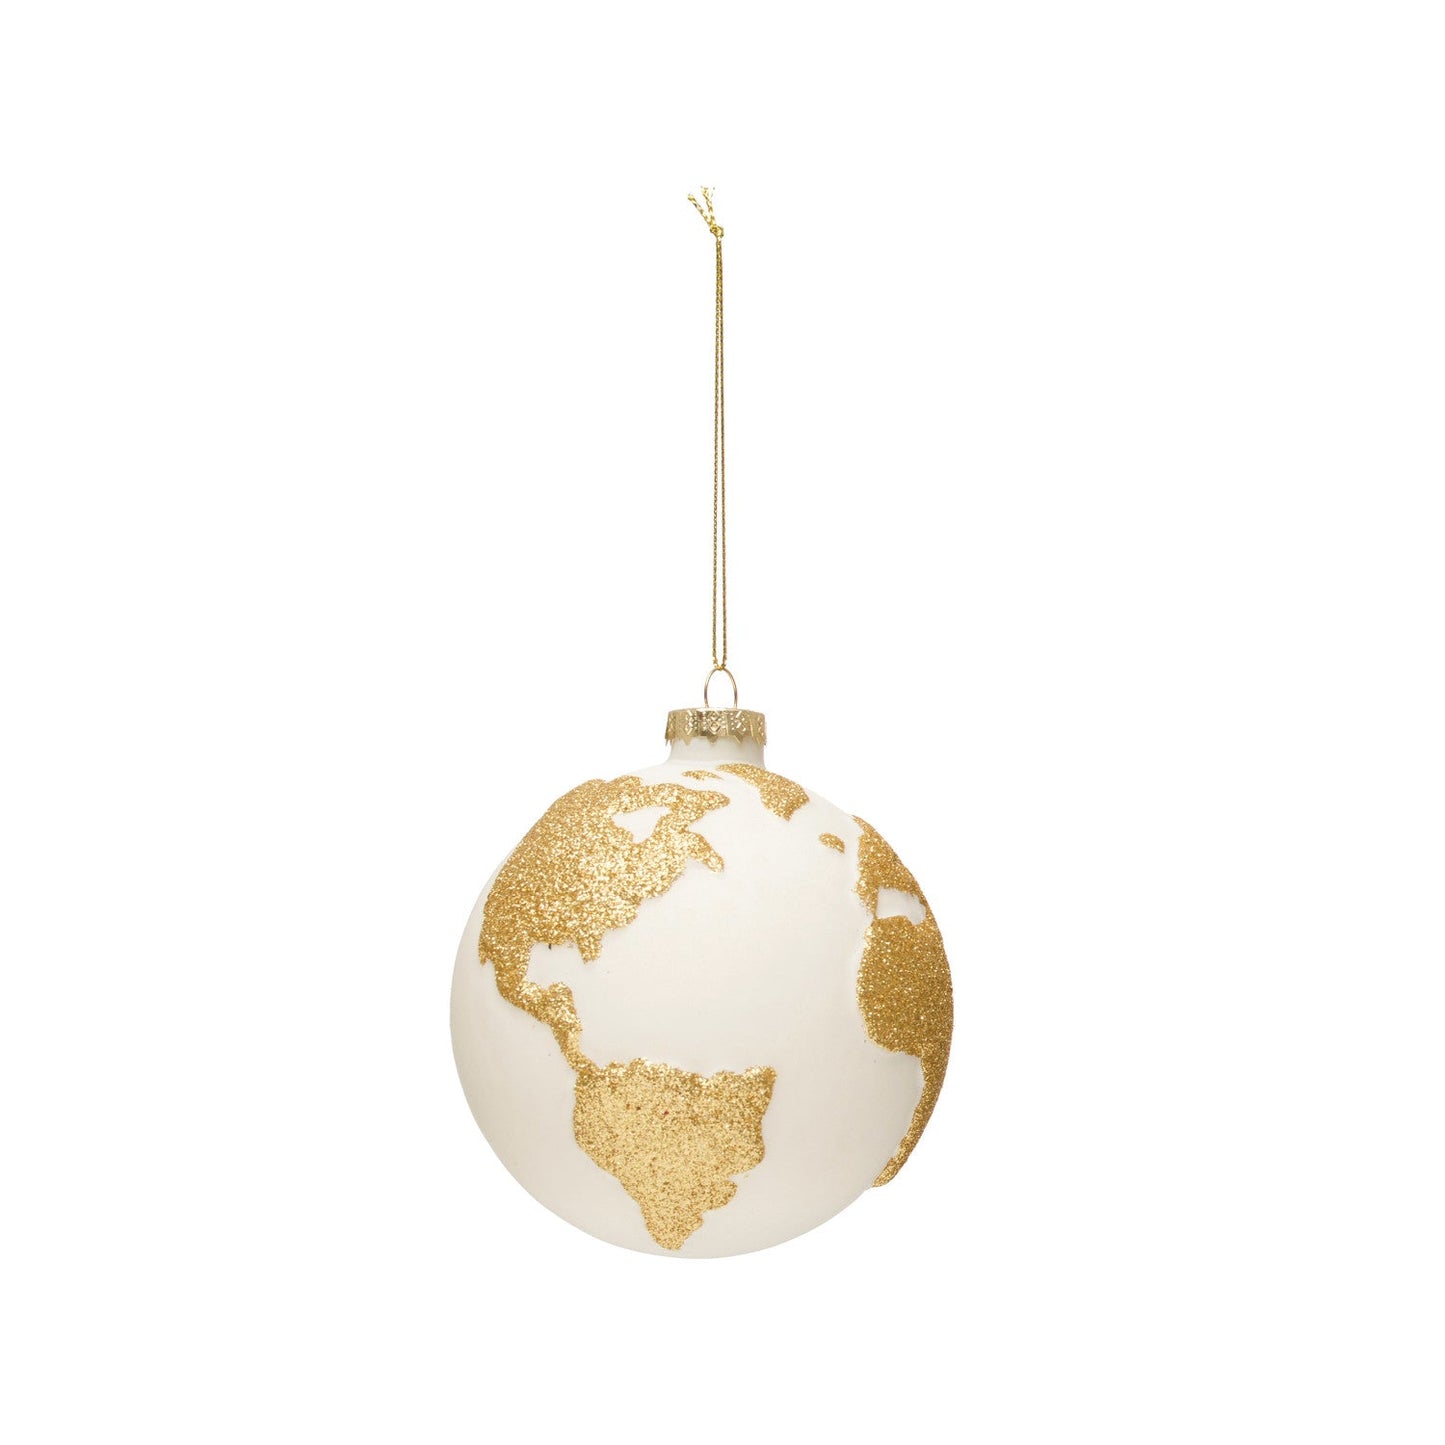 Round Hand-Painted Glass Globe Ornament w/ Glitter, White & Gold Finish - The Farmhouse AZ